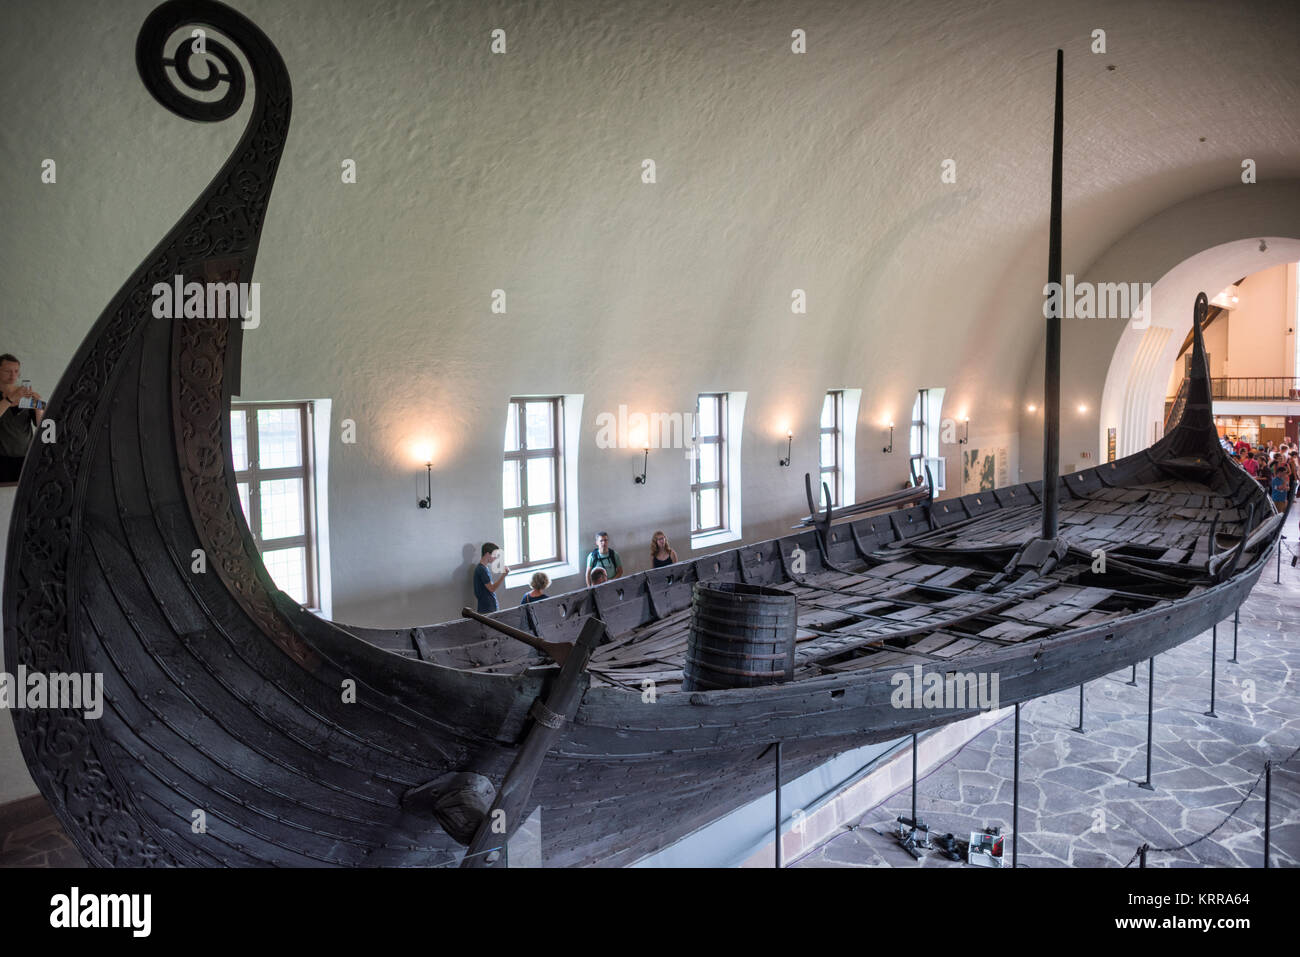 OSLO, Noruega - El barco de Oseberg es extraordinariamente bien conservado barco vikingo que es uno de los aspectos más destacados en el Museo de Barcos Vikingos en Oslo. Es el nombre de la granja en la que se descubrió en 1903. Se cree que fue construido en el oeste de Noruega alrededor de 820 AD y ha estado en uso regular durante un número de años antes de ser utilizado como una tumba barco de dos destacadas mujeres en 834 AD. Sus cuerpos fueron colocados en el centro de la nave, junto con una rica variedad de tributos. Está construido de madera de roble y mide 22 metros de largo y 5 de ancho. Podría ser remado o navegando. Museo de Barcos Vikingos de Oslo. Foto de stock